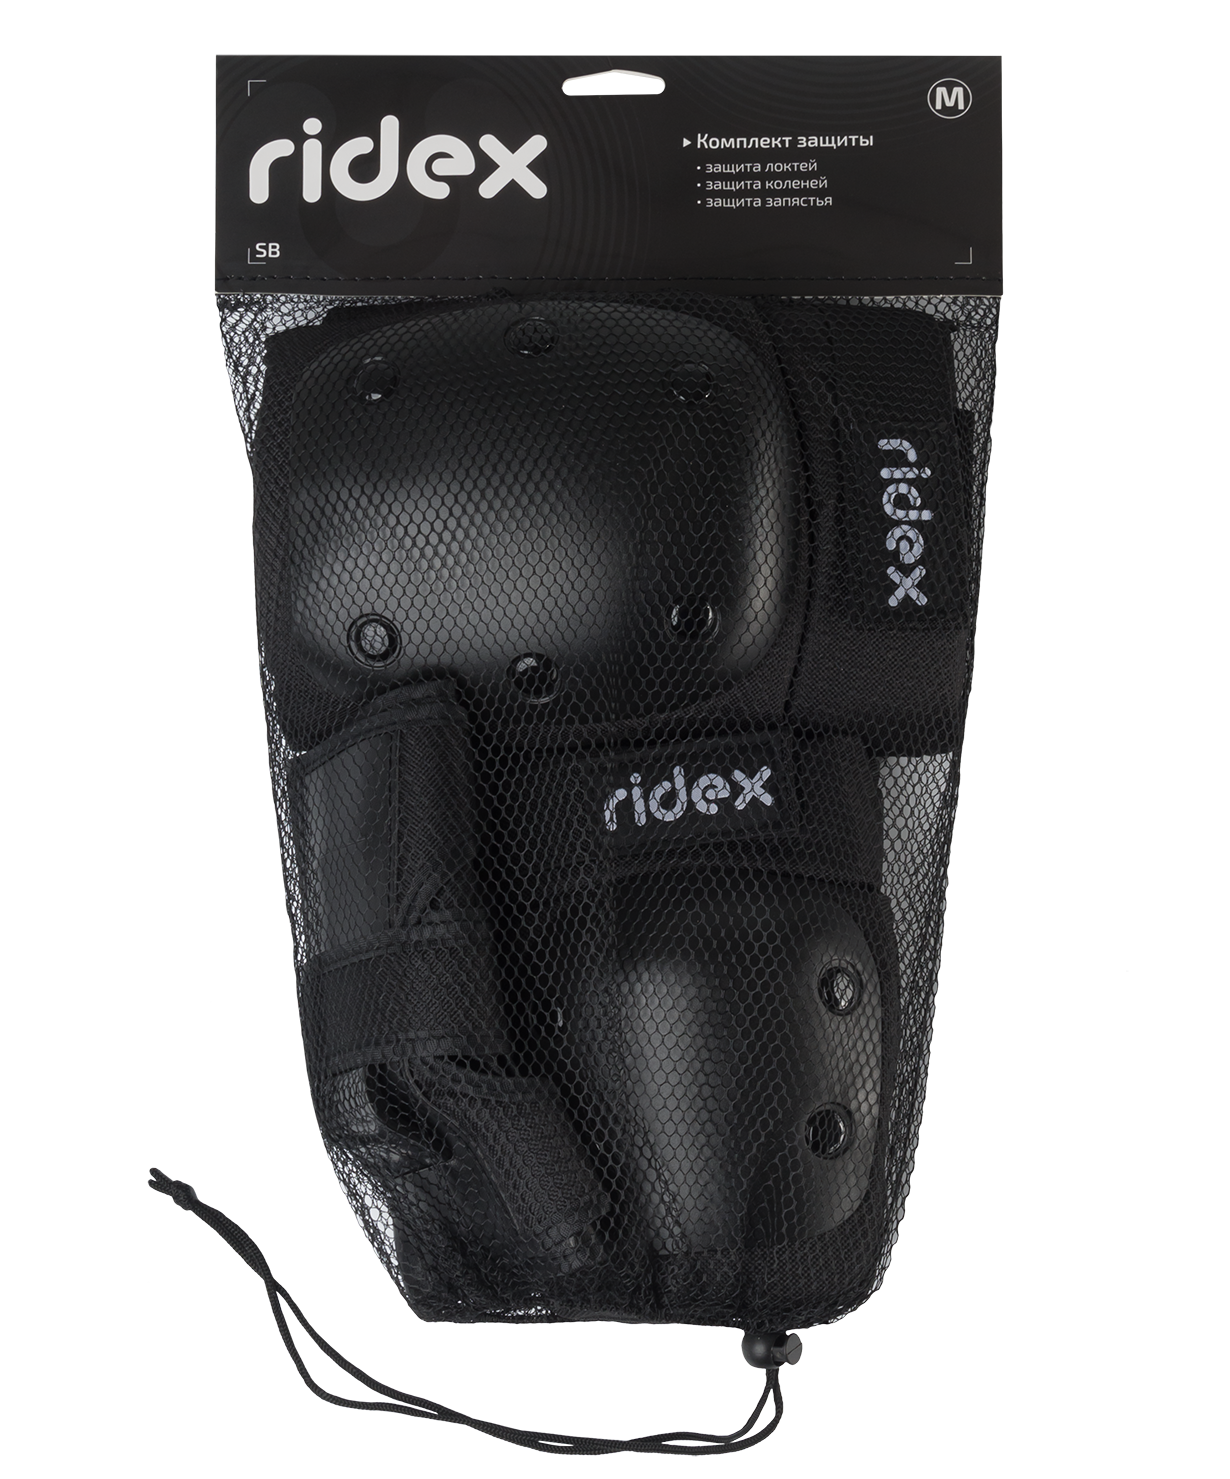 Комплект защиты RIDEX SB, цвет черный, размер M